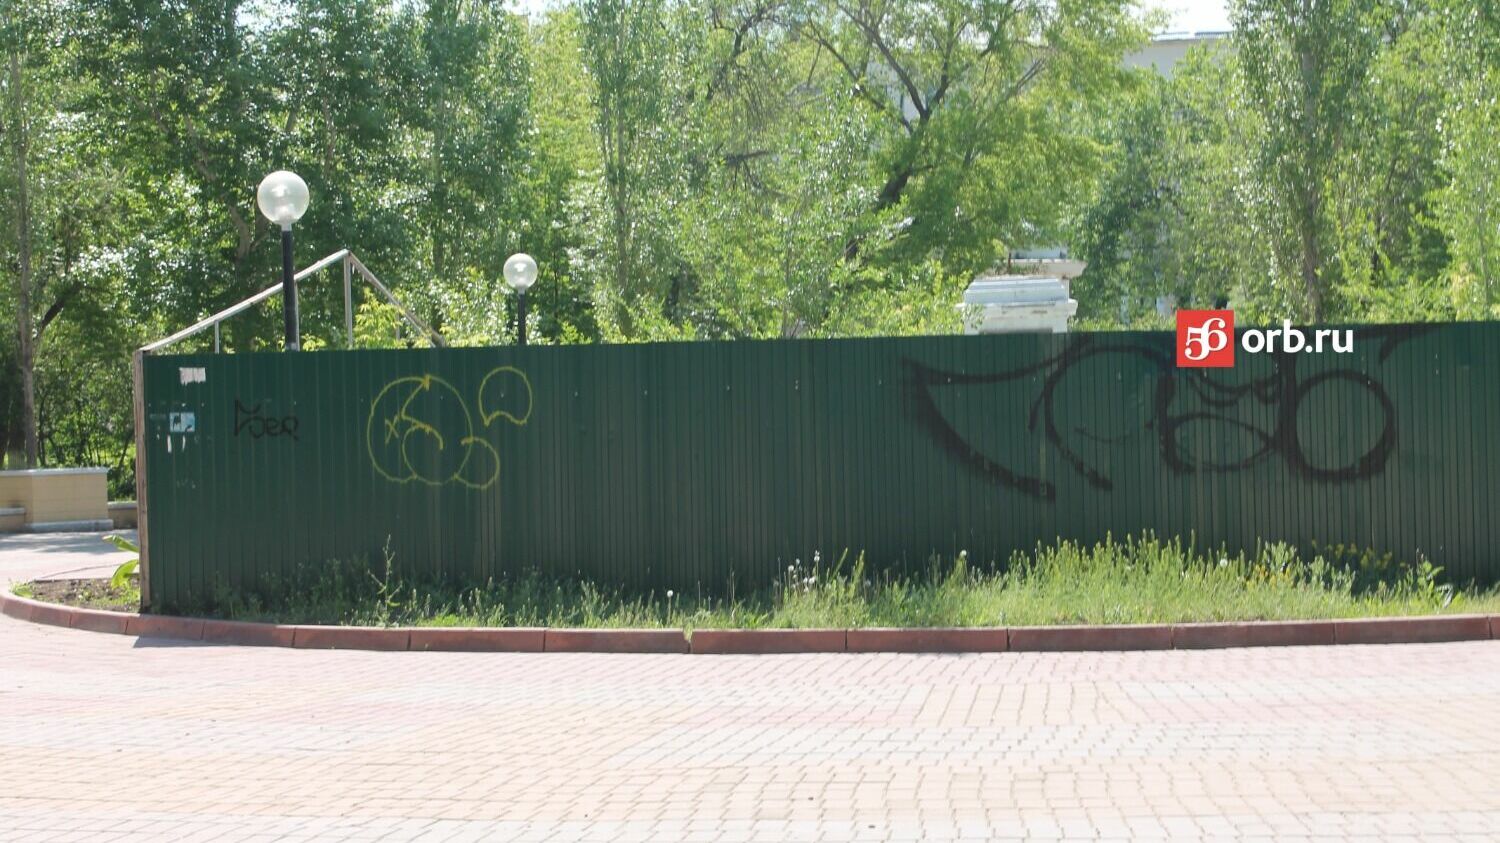 Постамент к памятнику Ленину обнесен забором